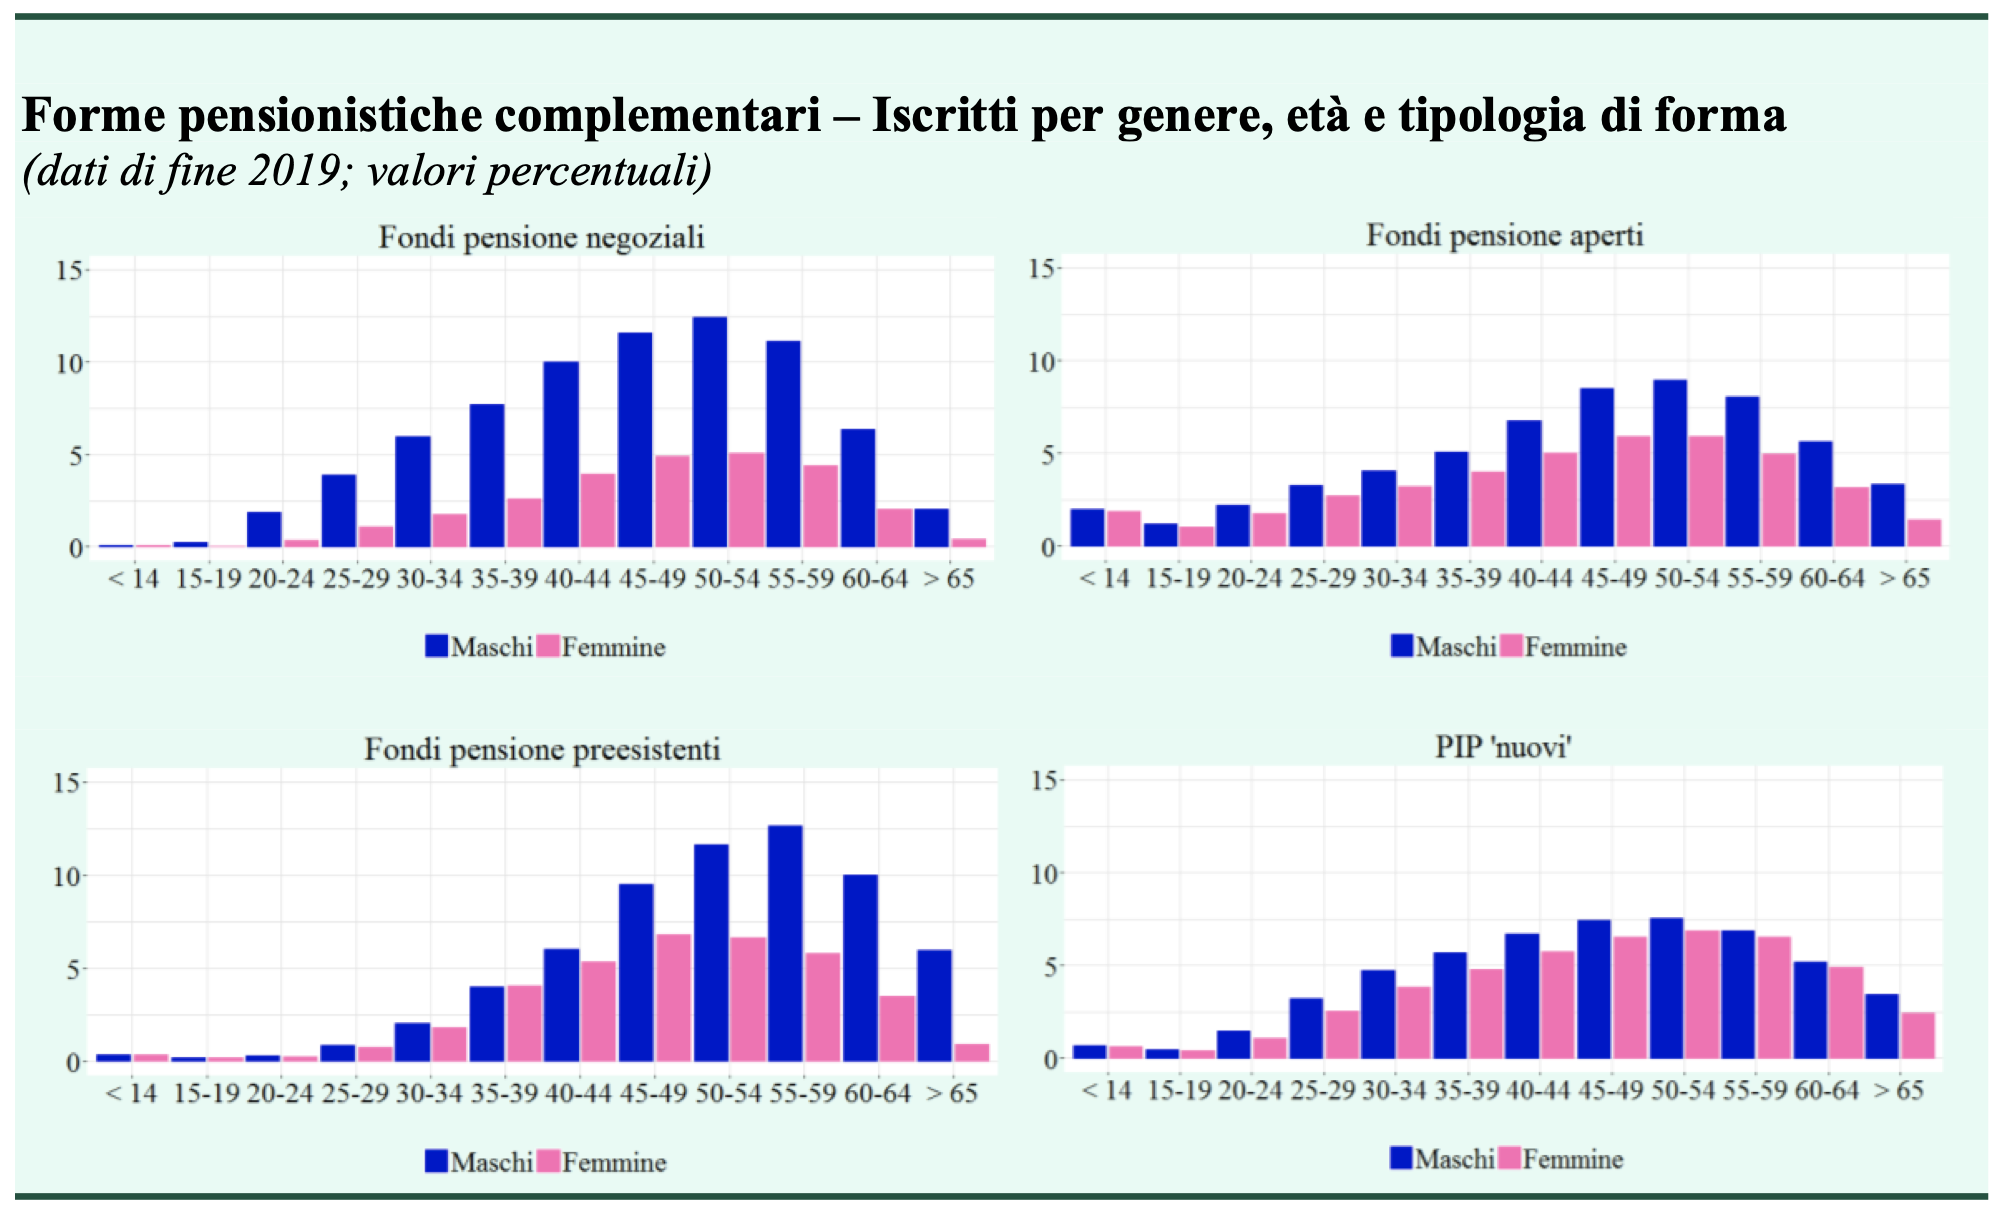 Forme pensionistiche complementari. Iscritti per genere, et , tipologia e forma (relazione COVIP)